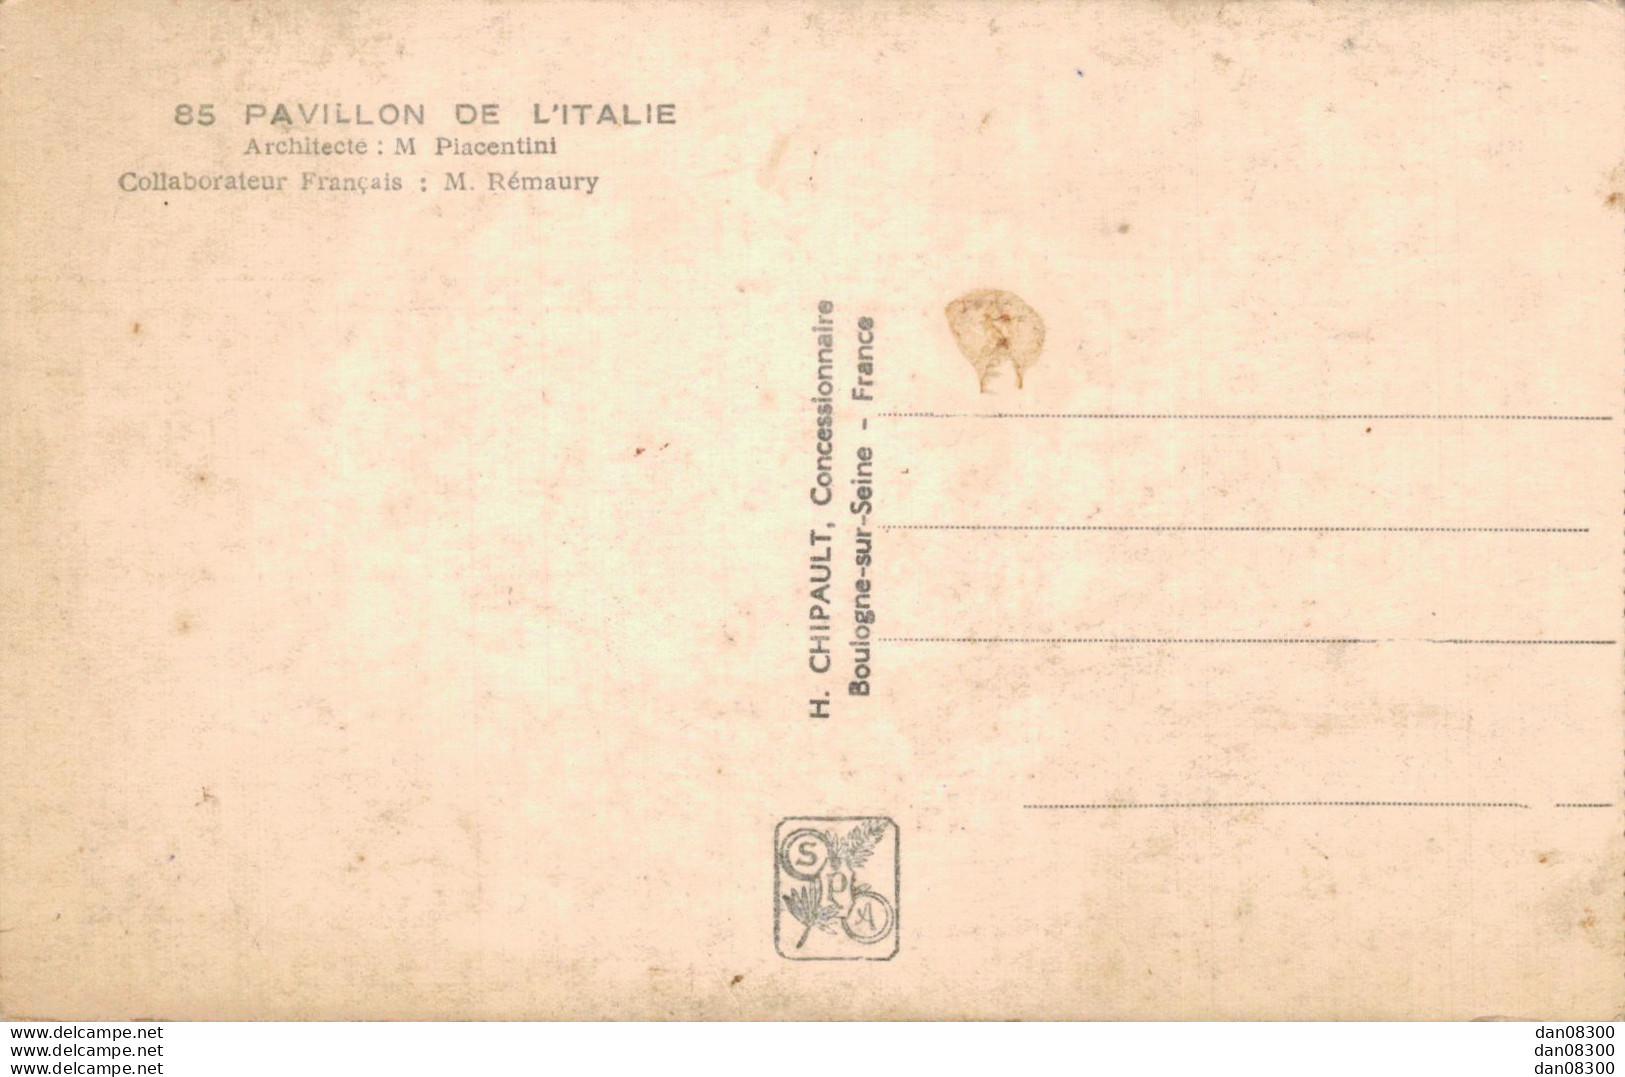 75 EXPOSITION INTERNATIONALE PARIS 1937 PAVILLON DE L'ITALIE - Mostre